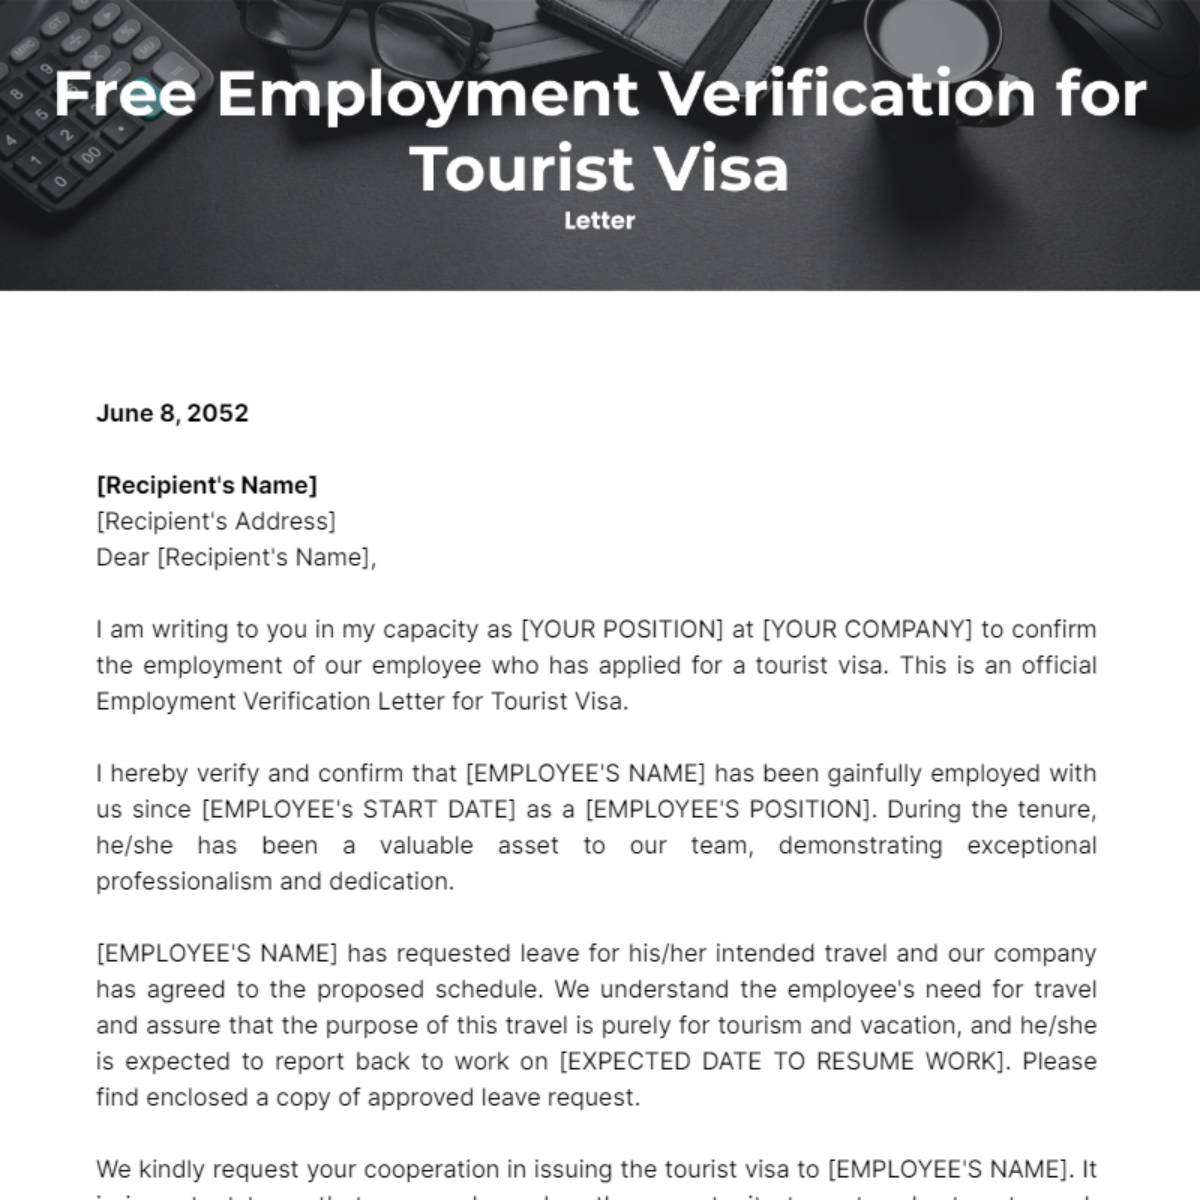 Employment Verification Letter for Tourist Visa Template